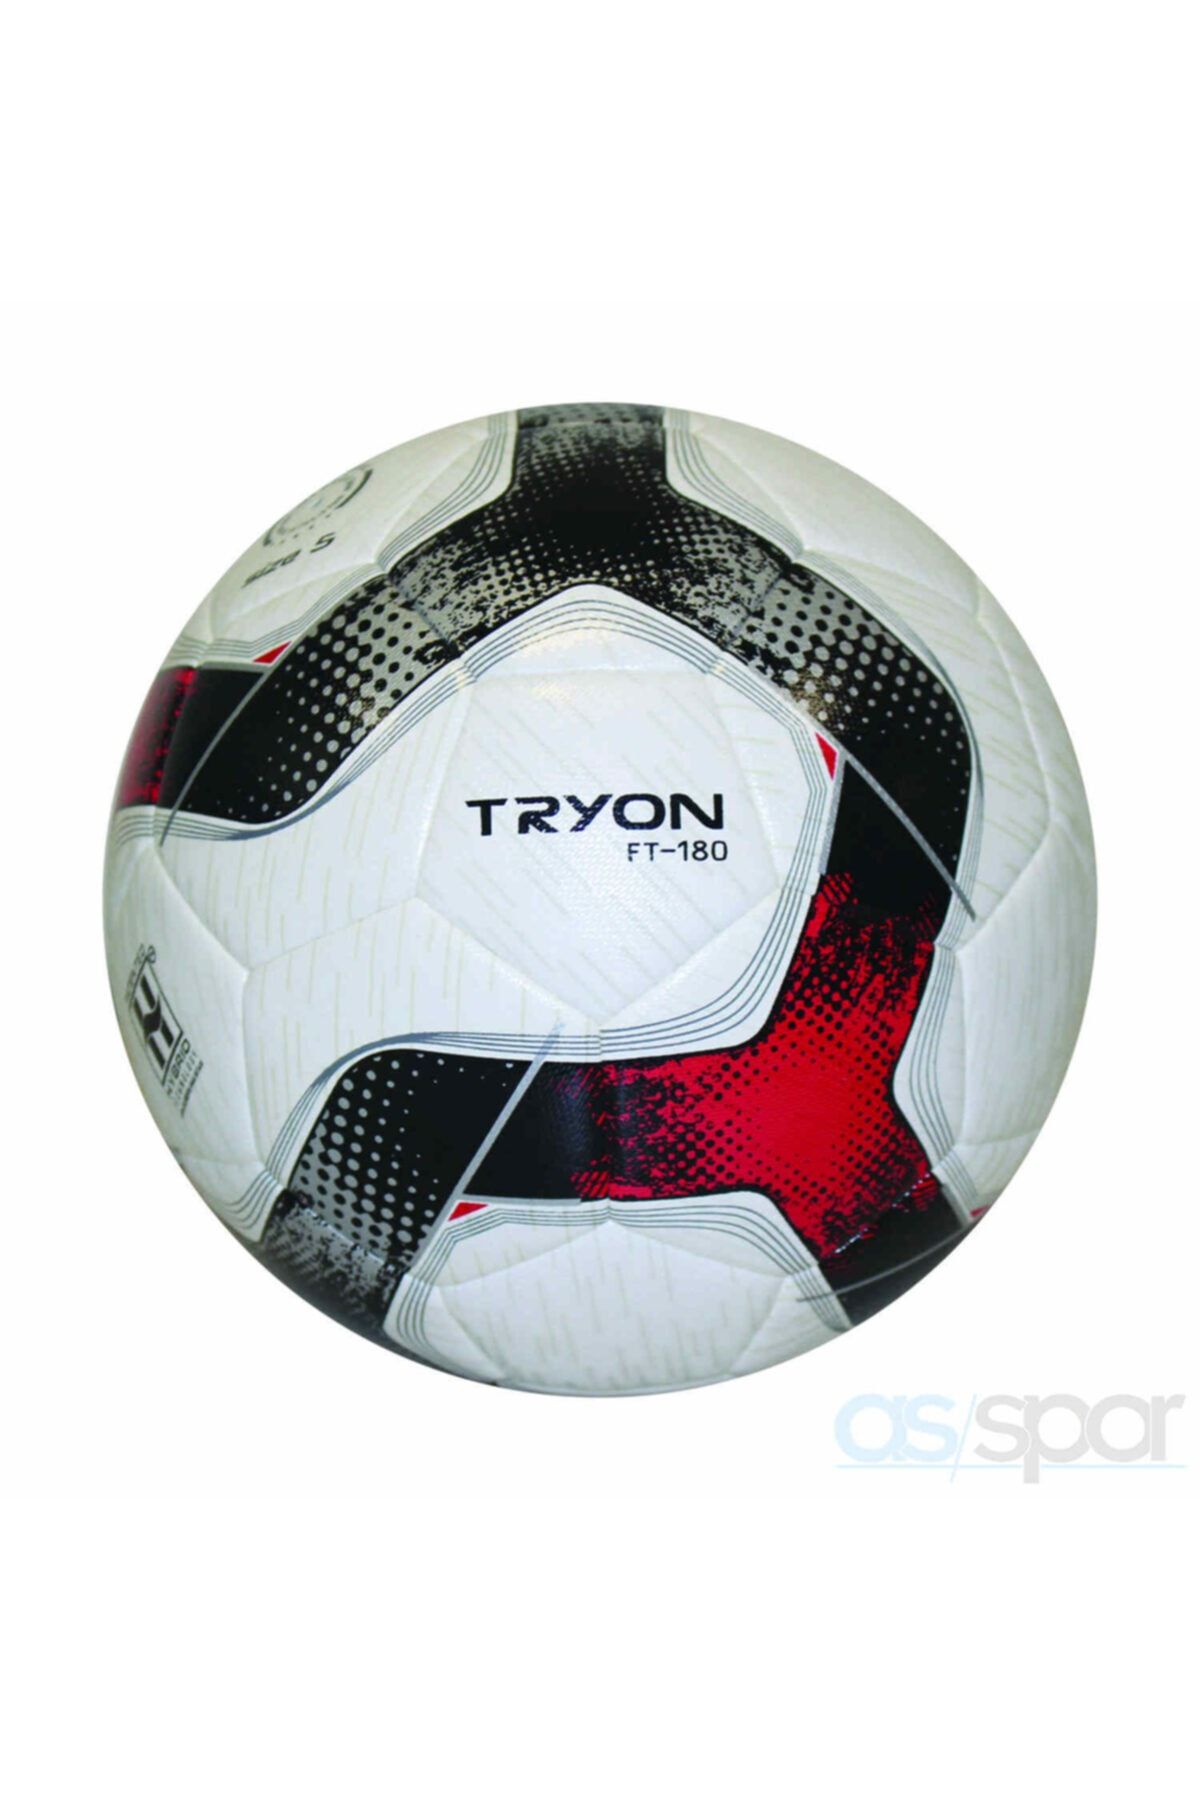 TRYON / Futbol Topu Ft-180